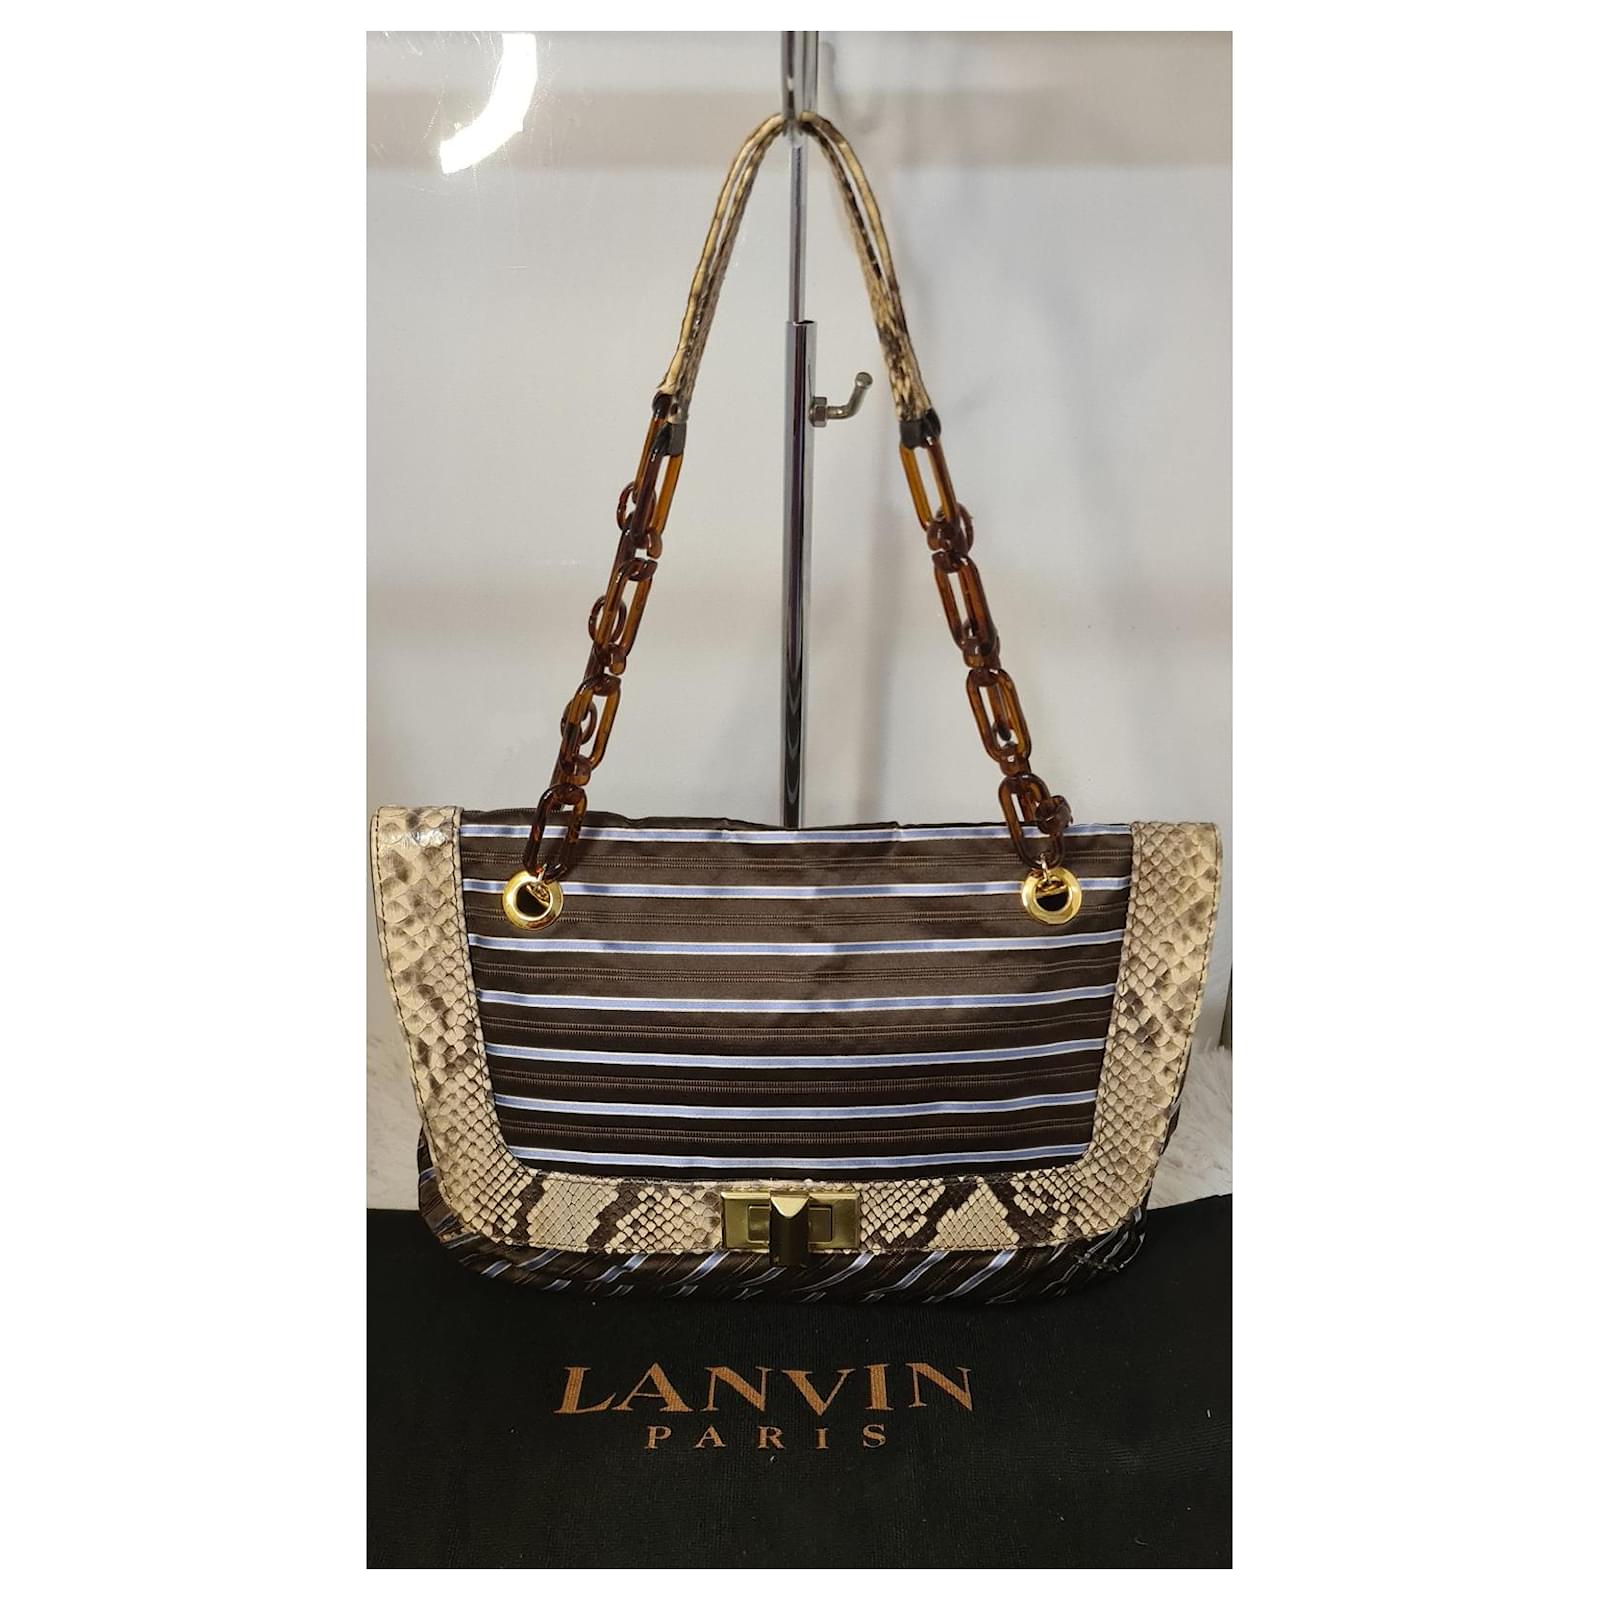 Lanvin Paris gorgeous chocolate brown pebbled... - Depop